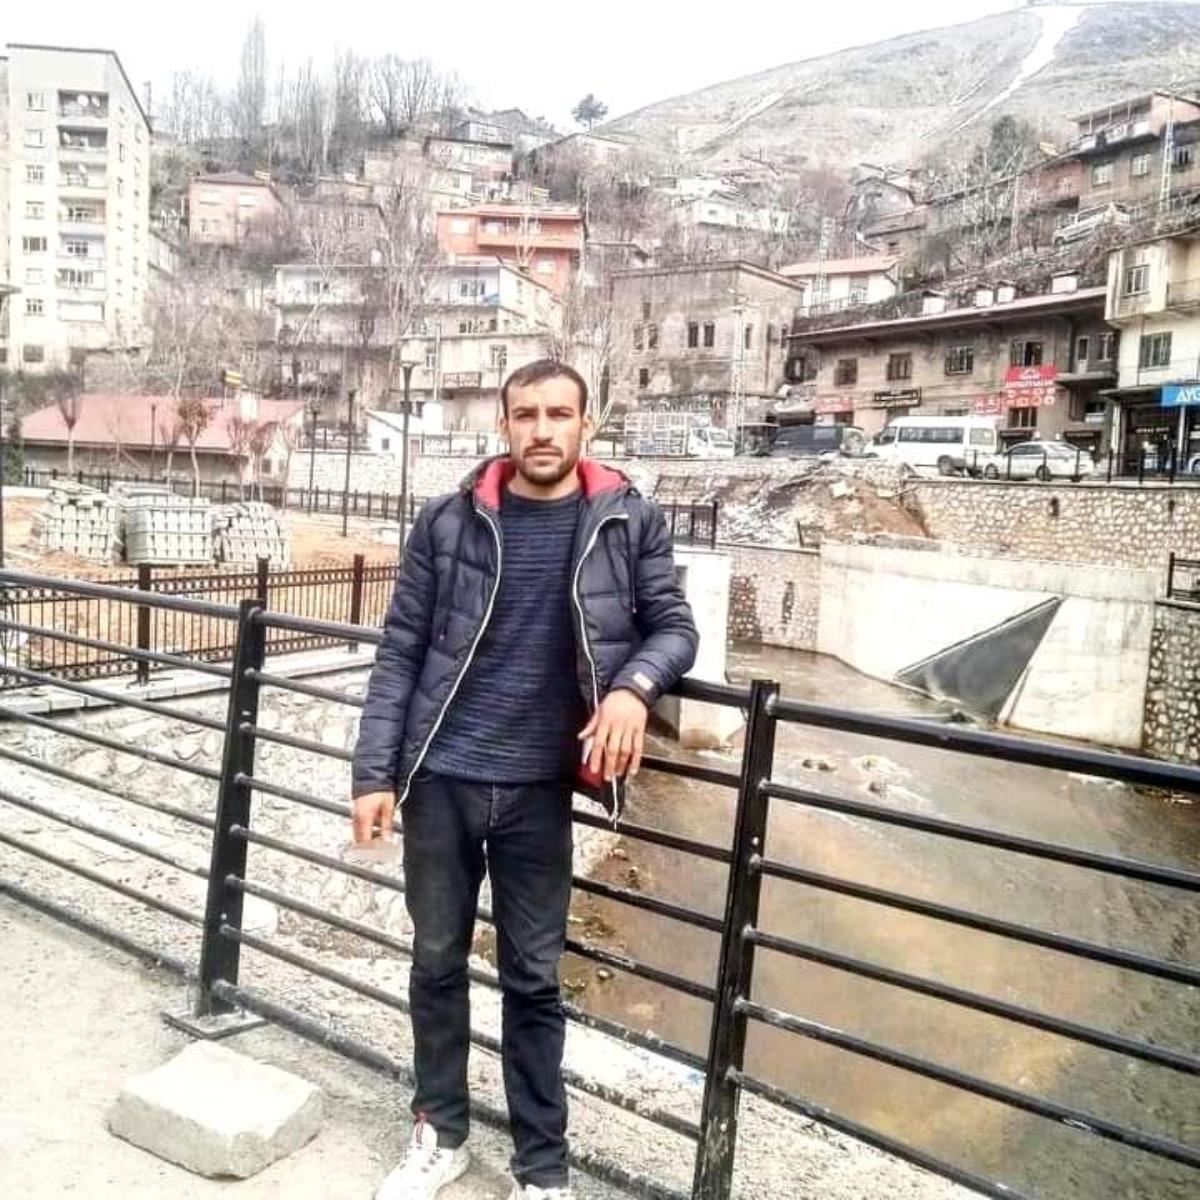 Mardin'de 25 yaşındaki gencin cinayete kurban gittiği ortaya çıktı